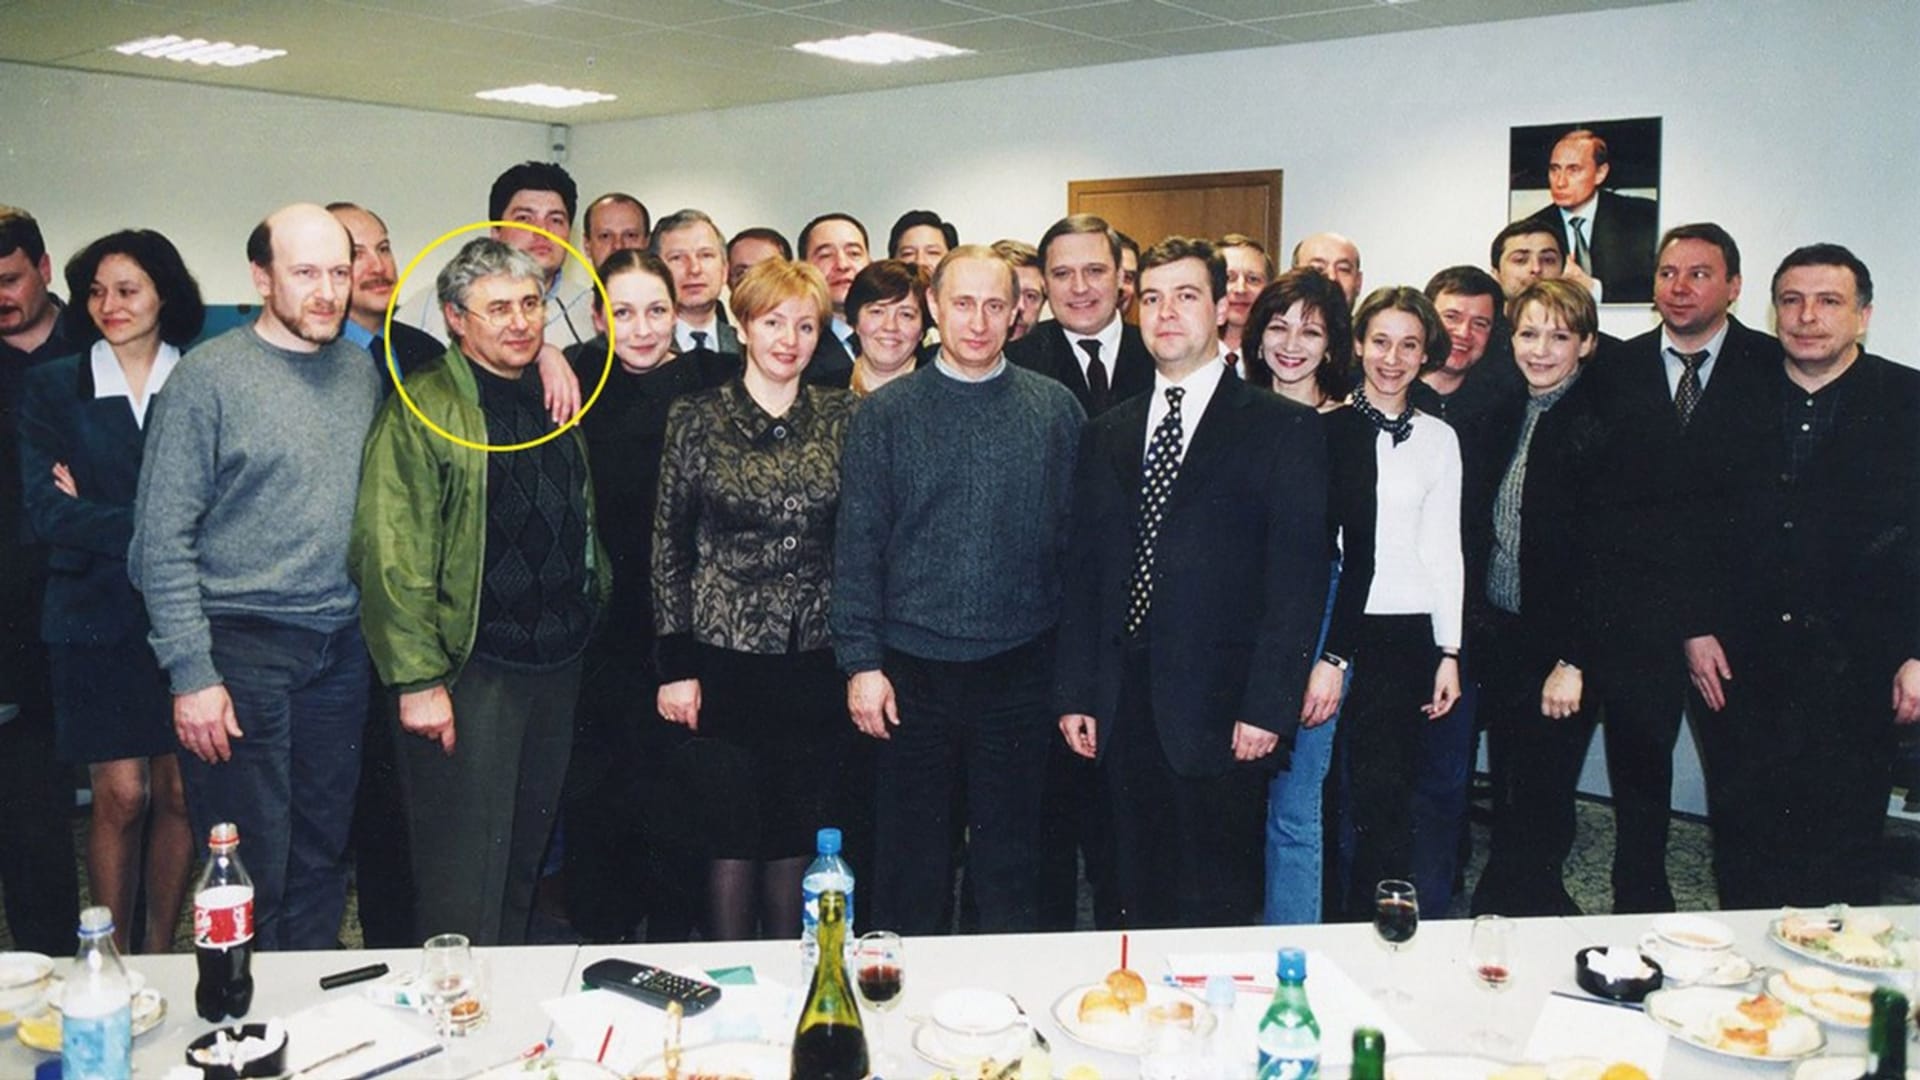 Gleb Pavlovskij (pátý zleva v zelené bundě) se velkou měrou podílel na první prezidentské kampani Vladimira Putina (zcela uprostřed ve svetru) pro volby v roce 2000. Jeho manažerem kampaně byl tehdy pozdější premiér a prezident Dmitrij Medveděv (vpravo od Putina v saku a kravatě).